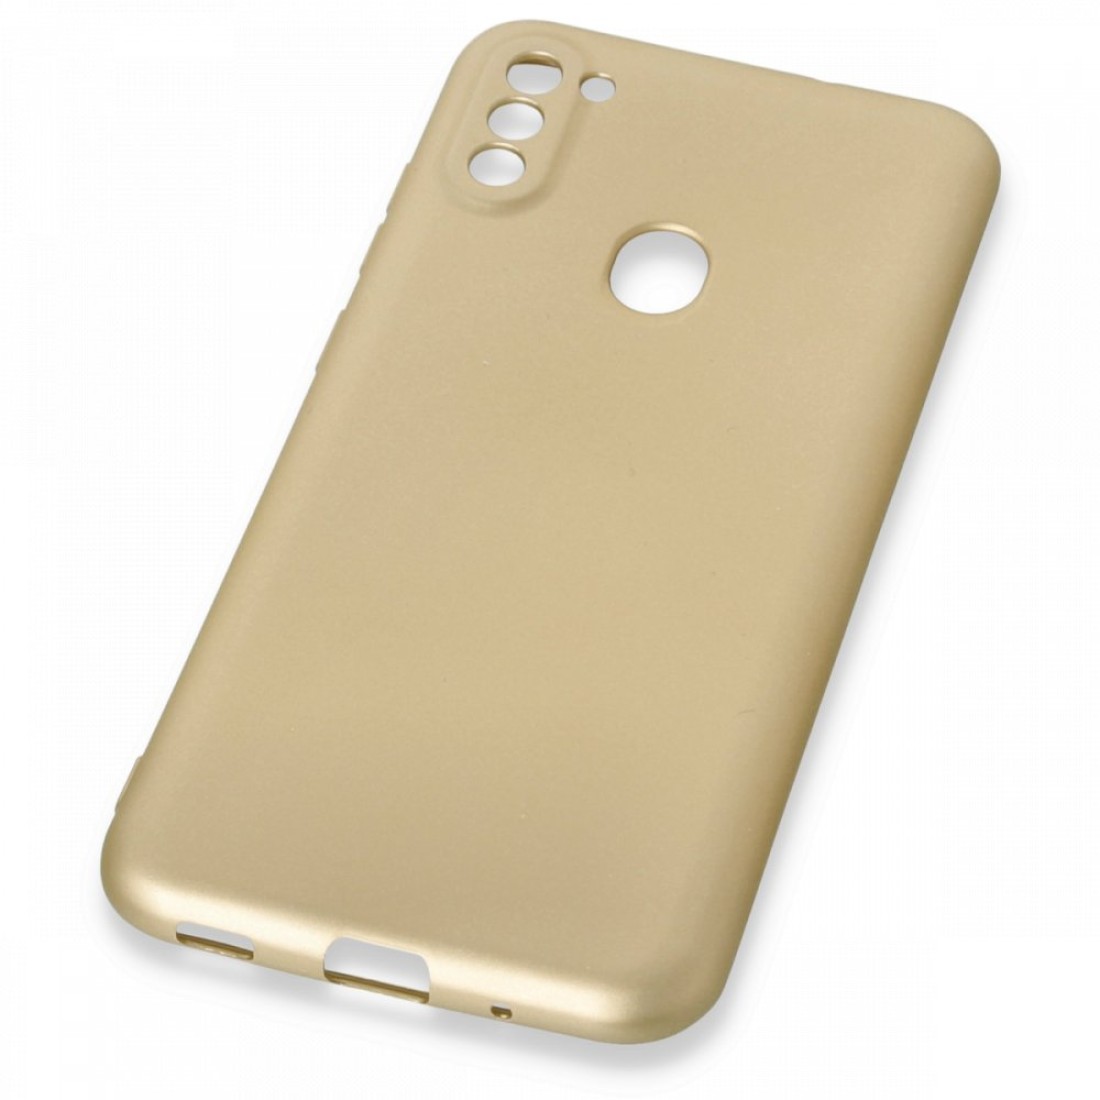 Samsung Galaxy M11 Kılıf Premium Rubber Silikon - Gold